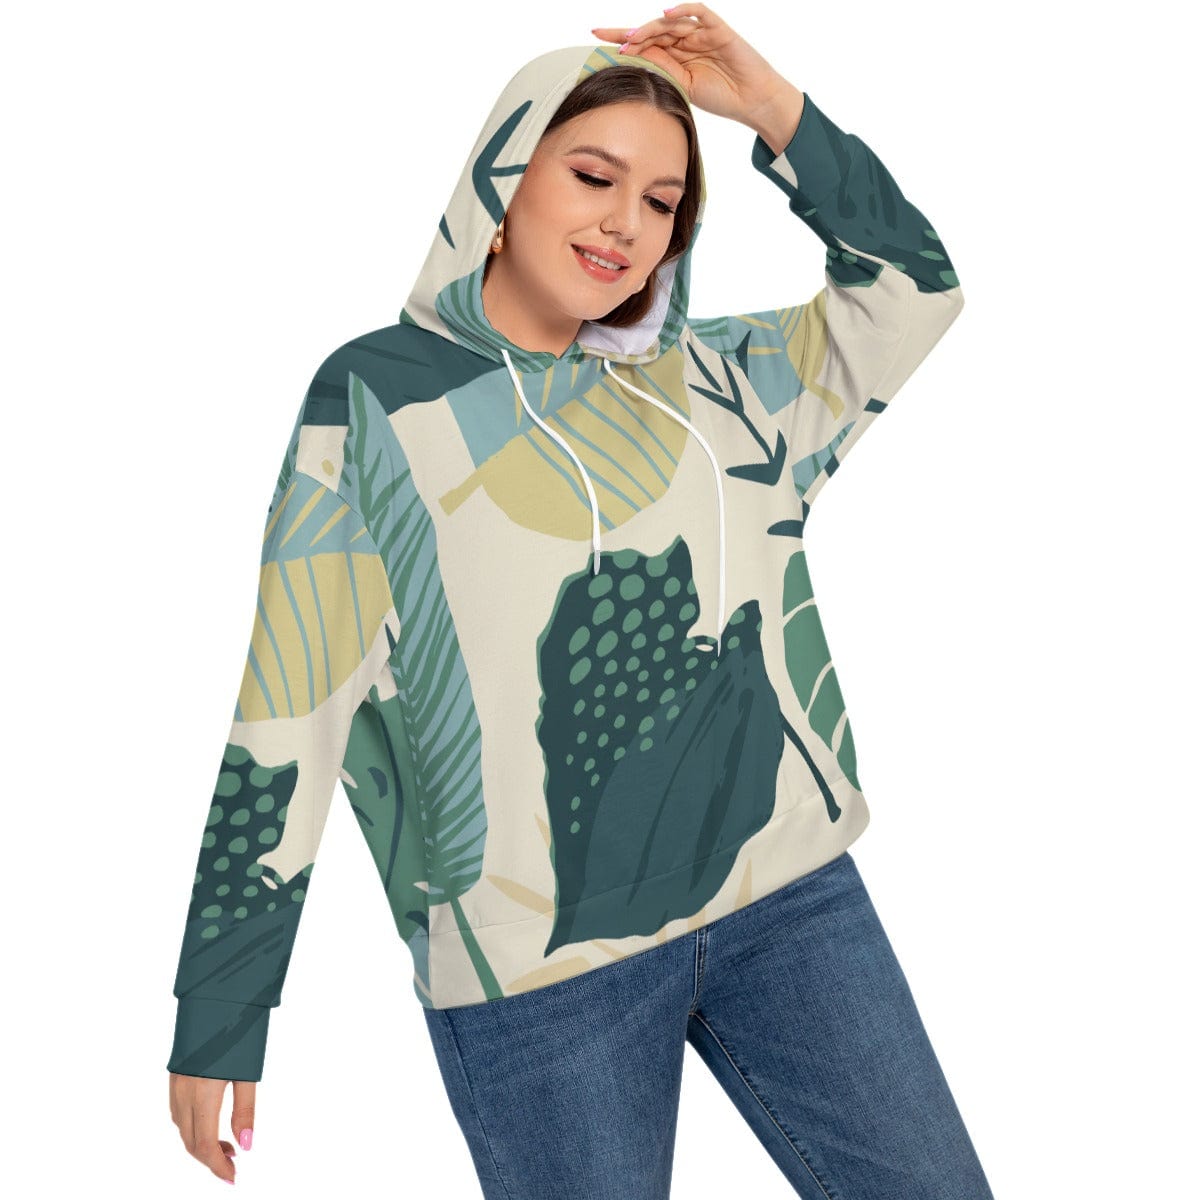 Yoycol All-Over Print Women's Long Sleeve Sweatshirt With Hood(Plus Size)